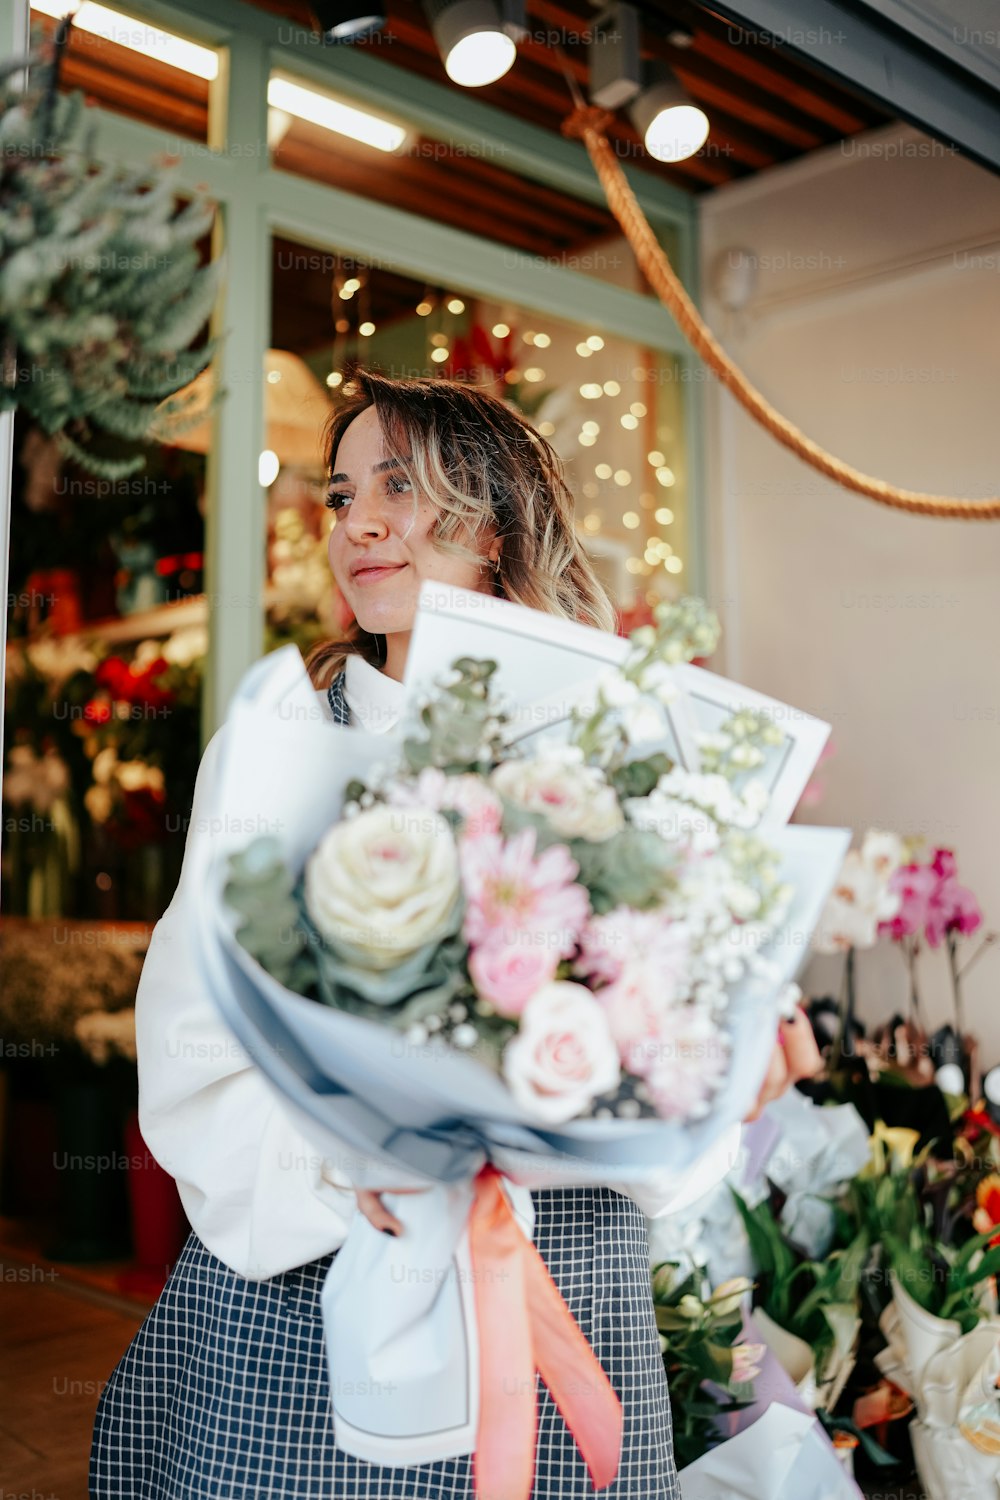 꽃집 앞에서 꽃다발을 들고 있는 여자